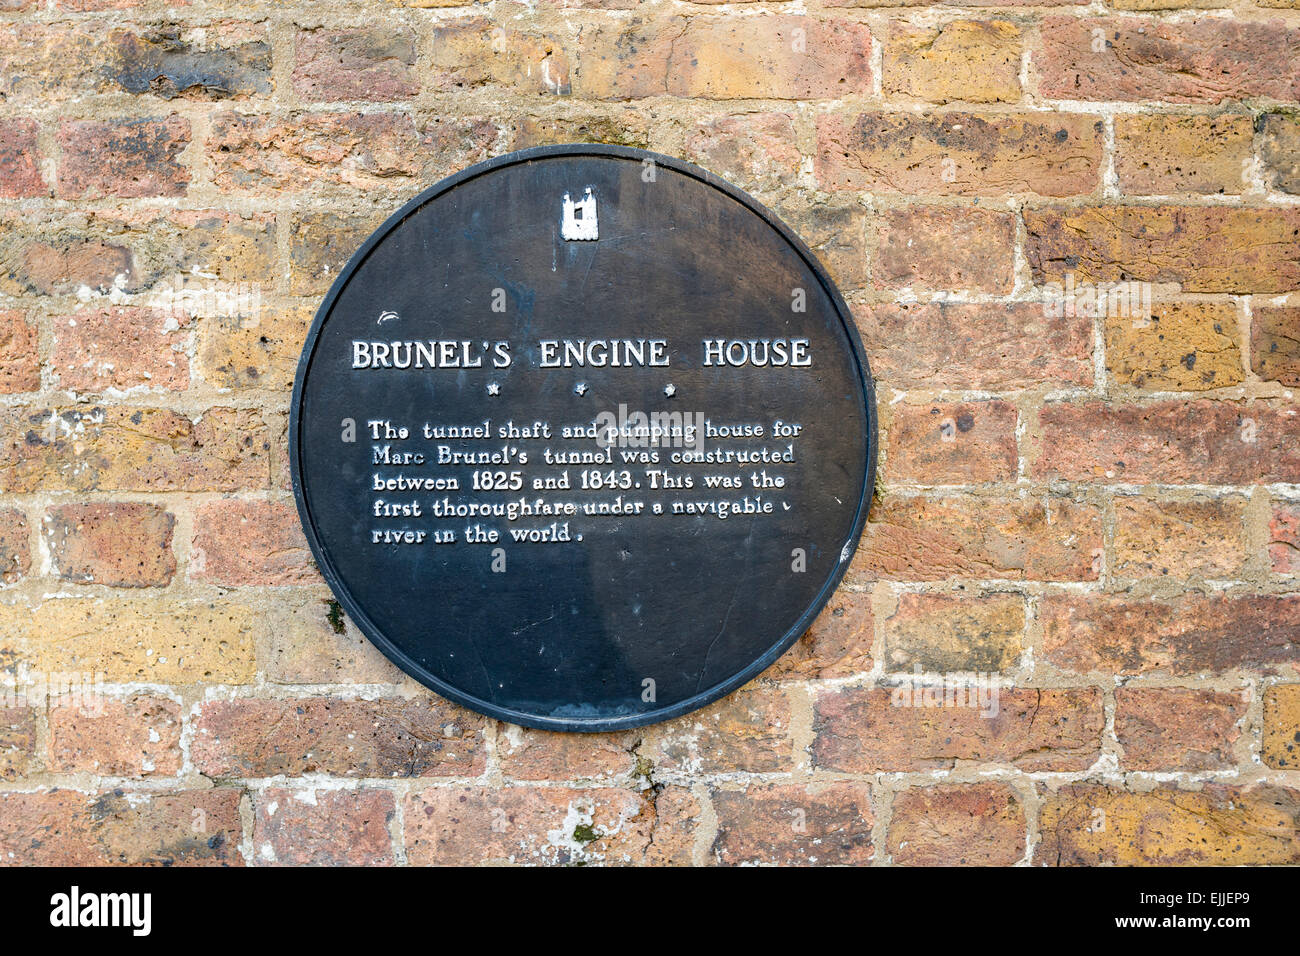 Une plaque sur le mur d'un atelier à Rotherhithe Londres identifie le site comme celui de moteur de Brunel House Banque D'Images